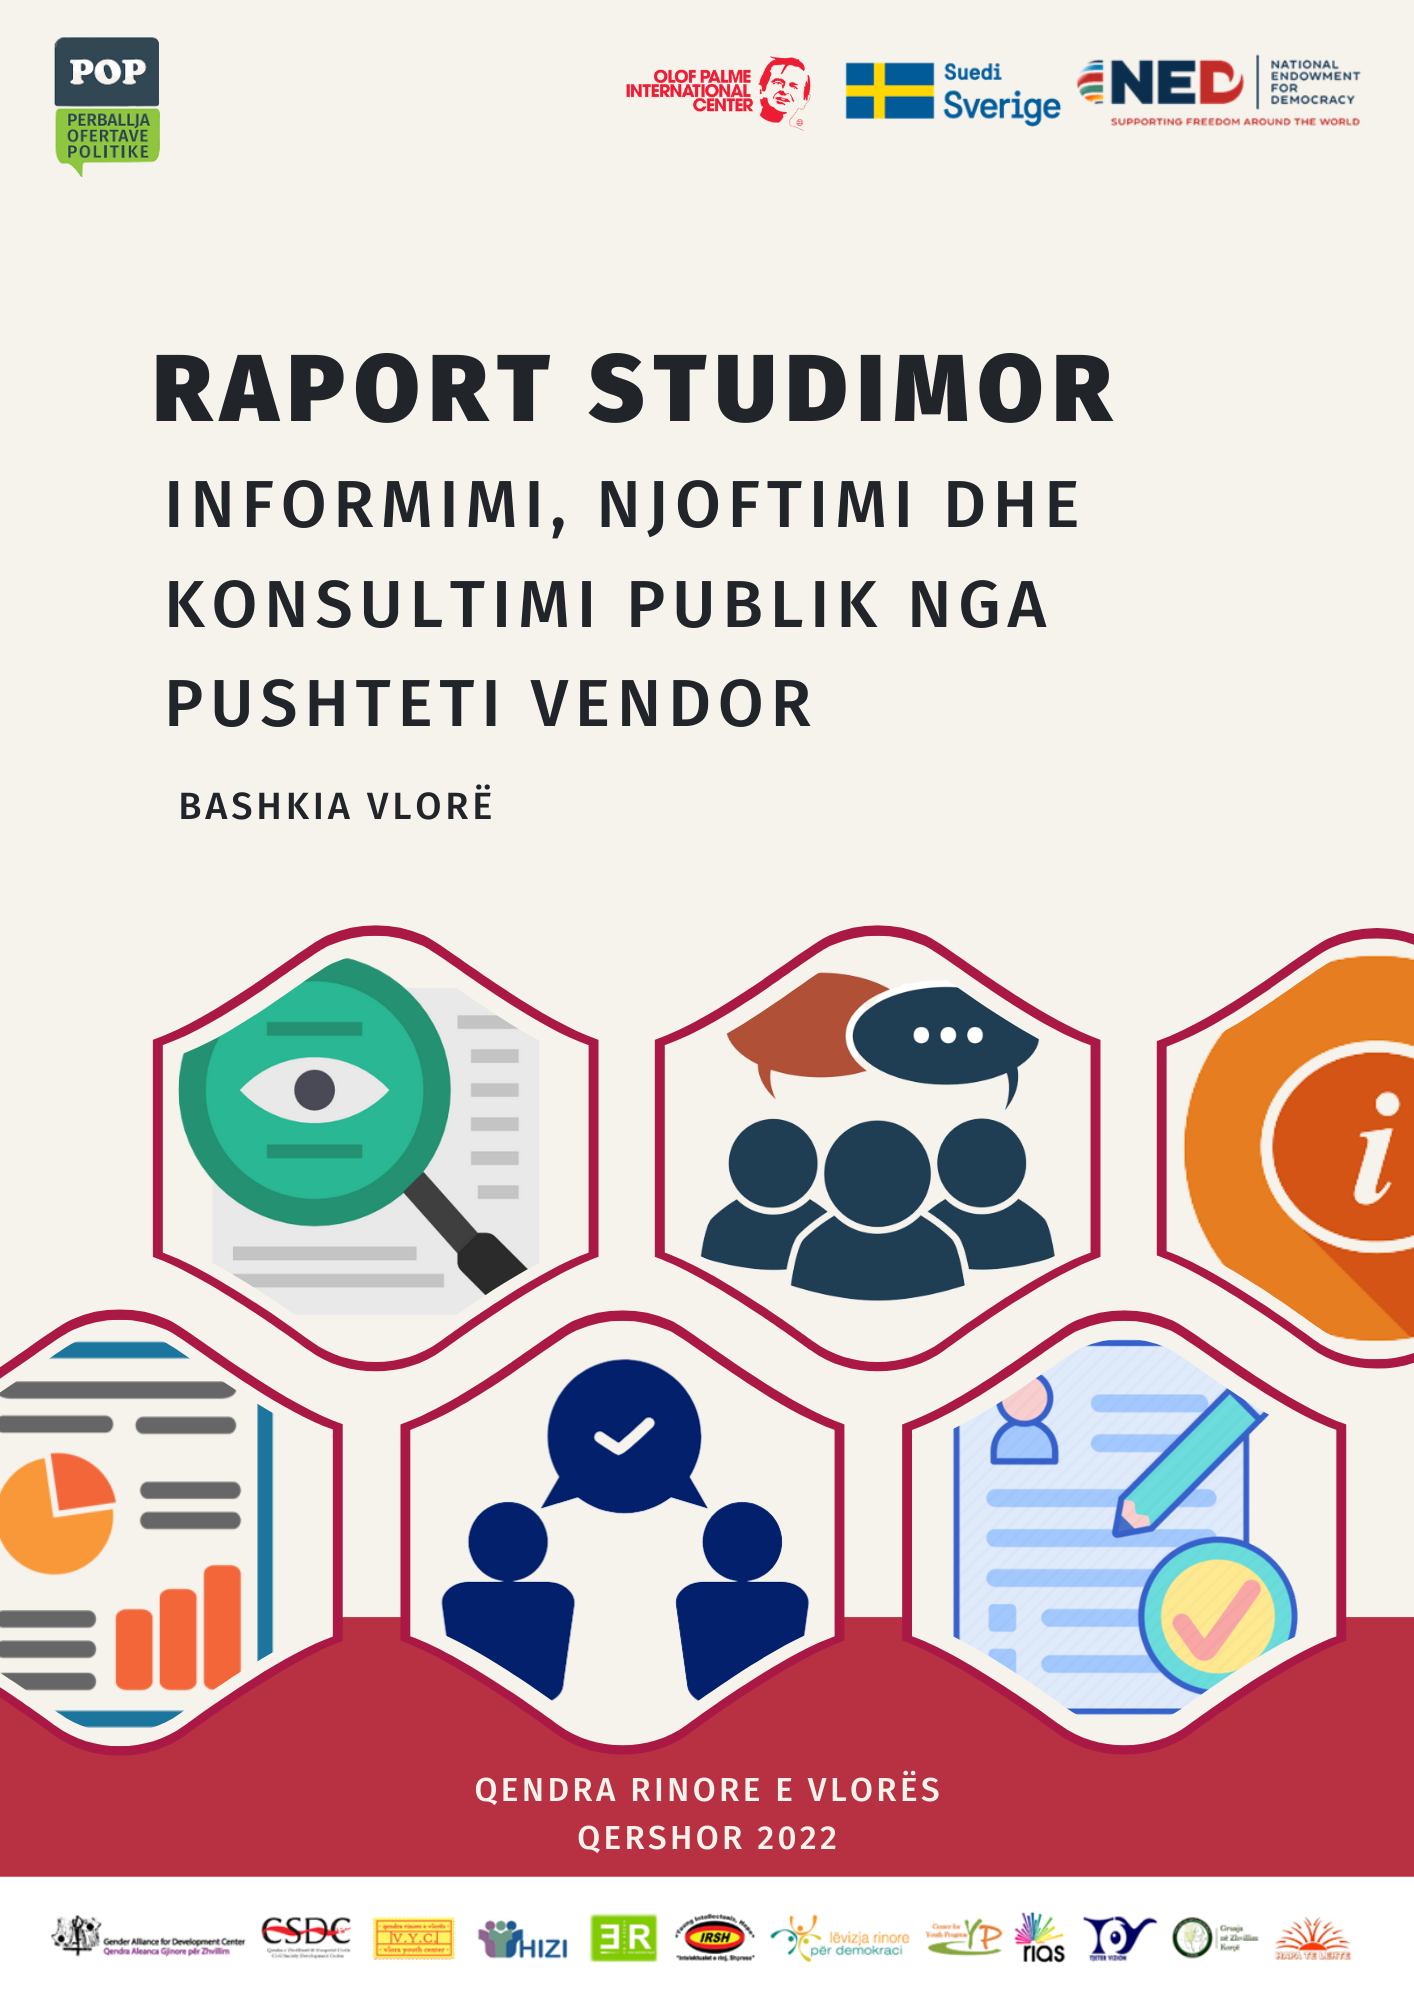 Raporti studimor “Informimi, Njoftimi dhe Konsultimi Publik” – Bashkia Vlorë